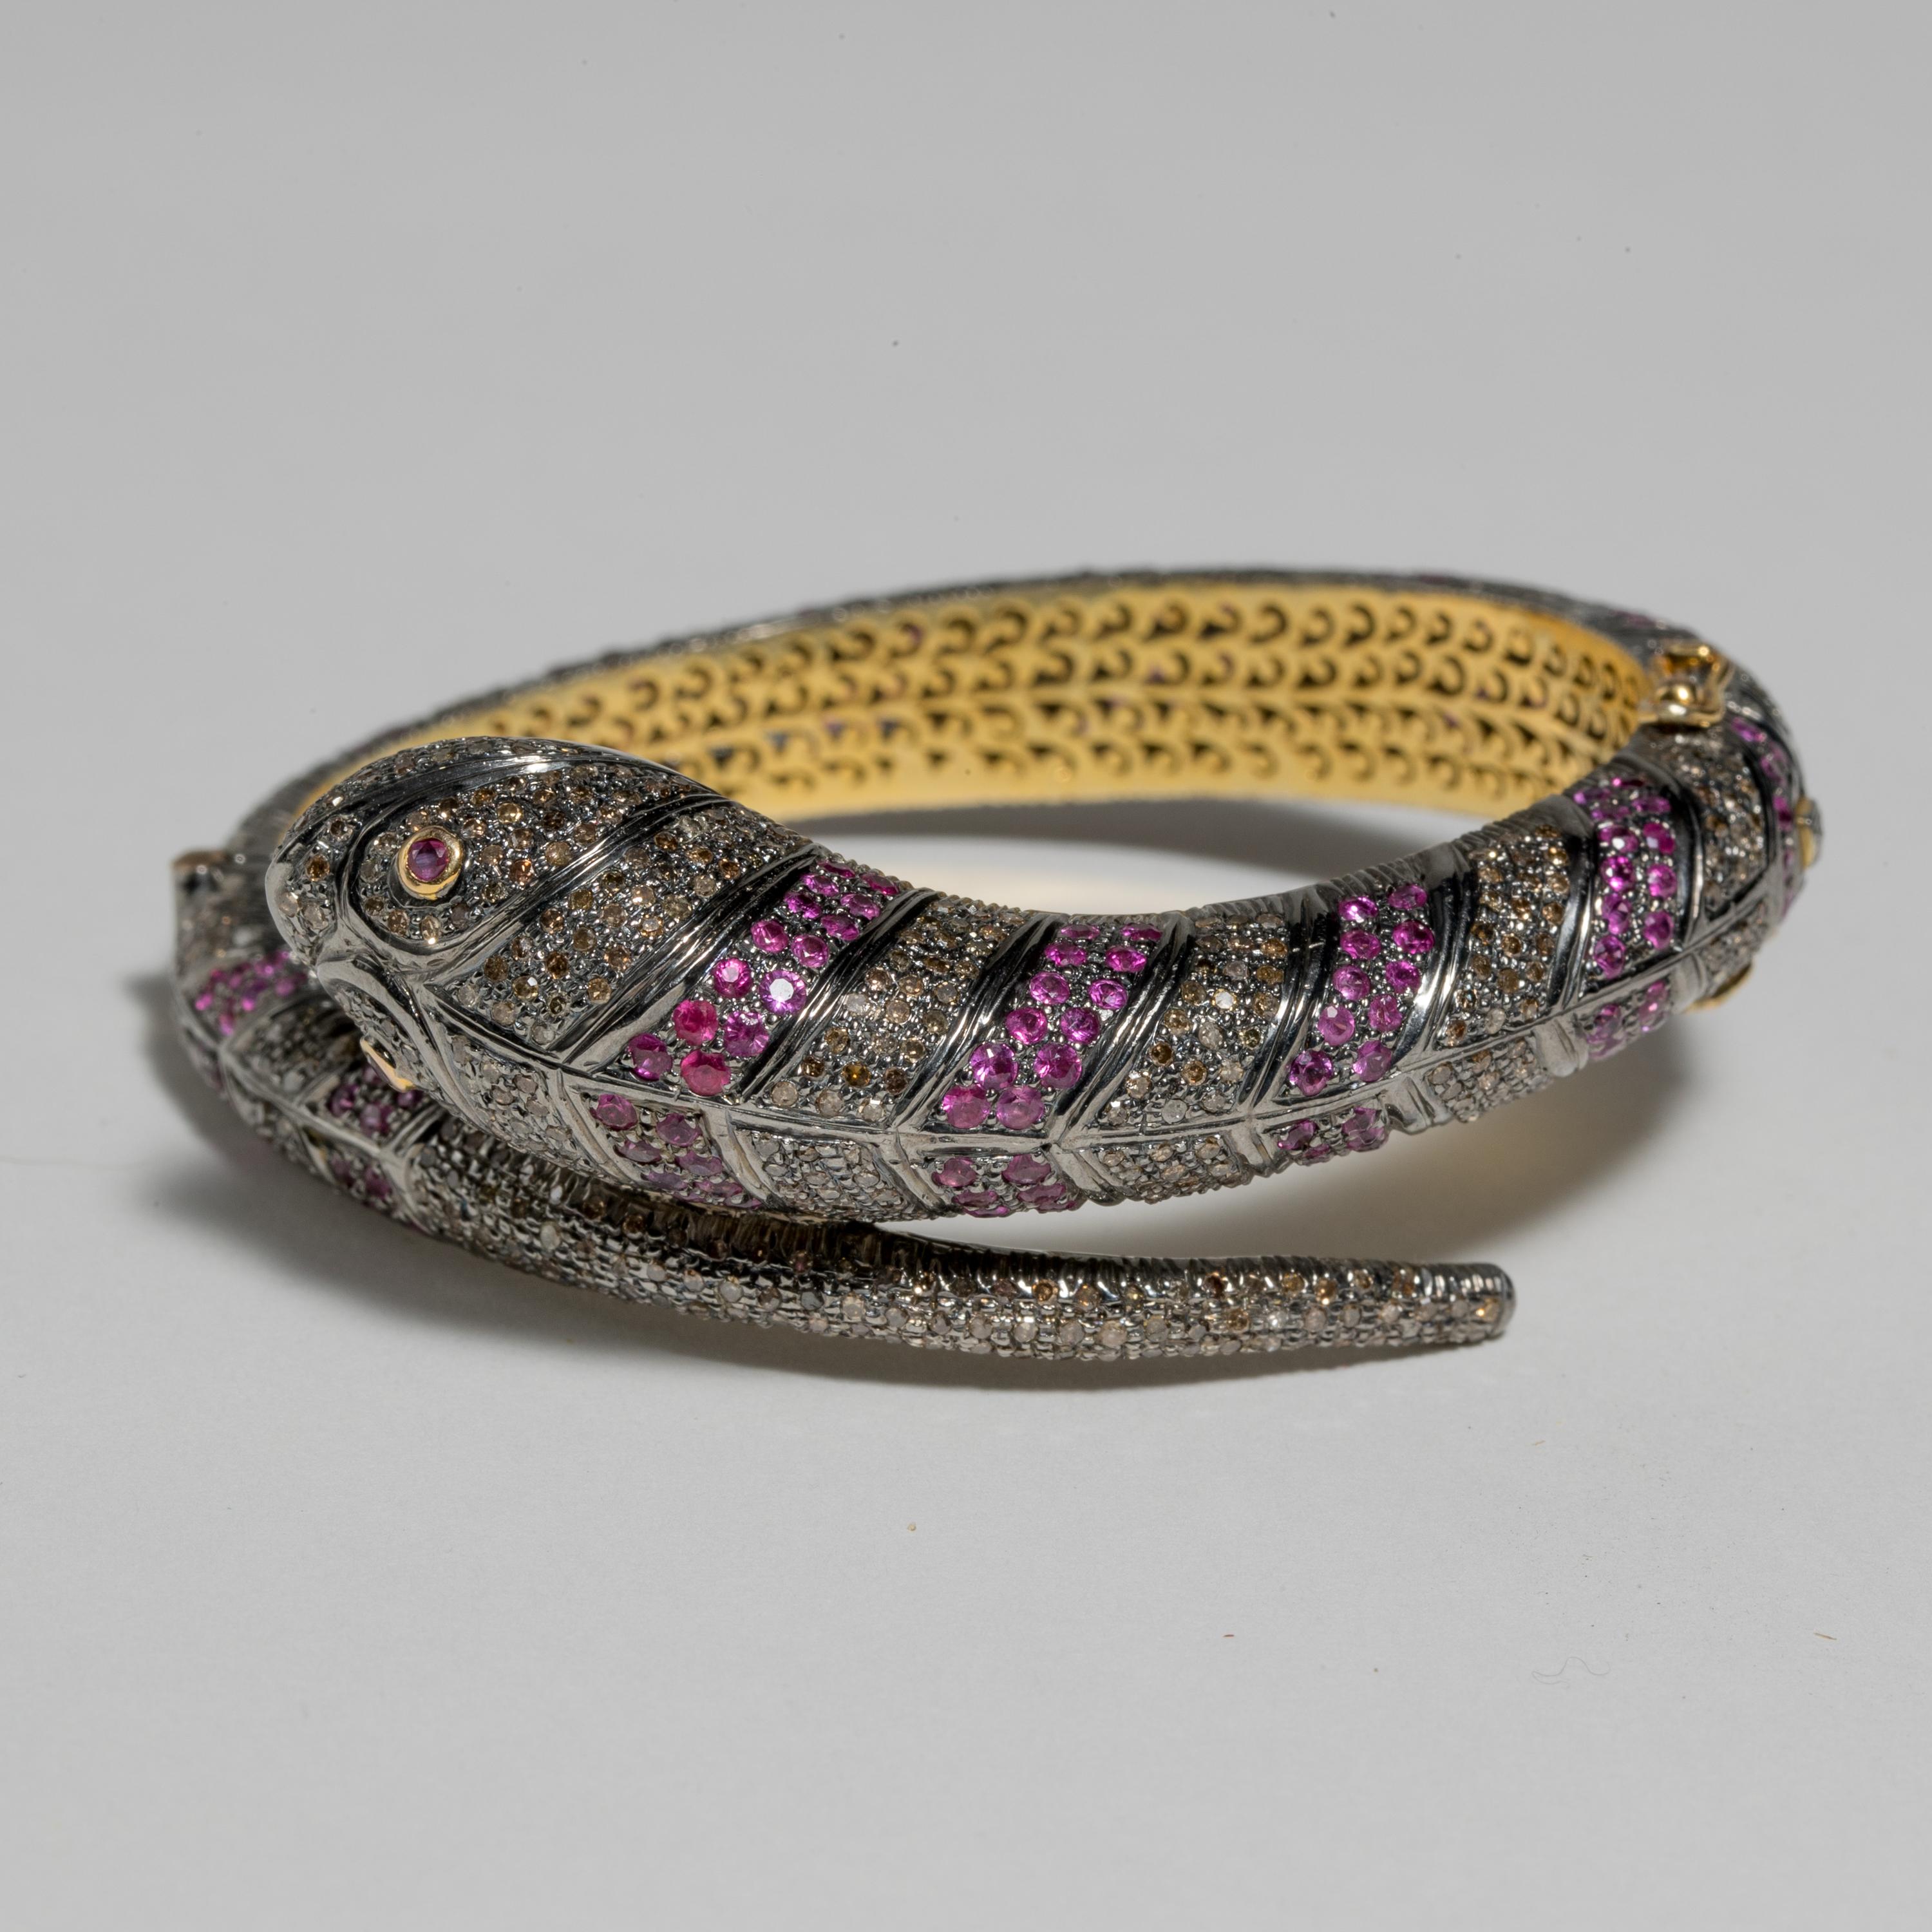 Un bracelet serpent avec des rubis birmans et des diamants facettés en sertissage pave.  Or 18 carats et argent.  Les rubis et les diamants sont de taille ronde.  Les diamants totalisent 4,40 carats et les rubis 5,25 carats.  La forme ovale